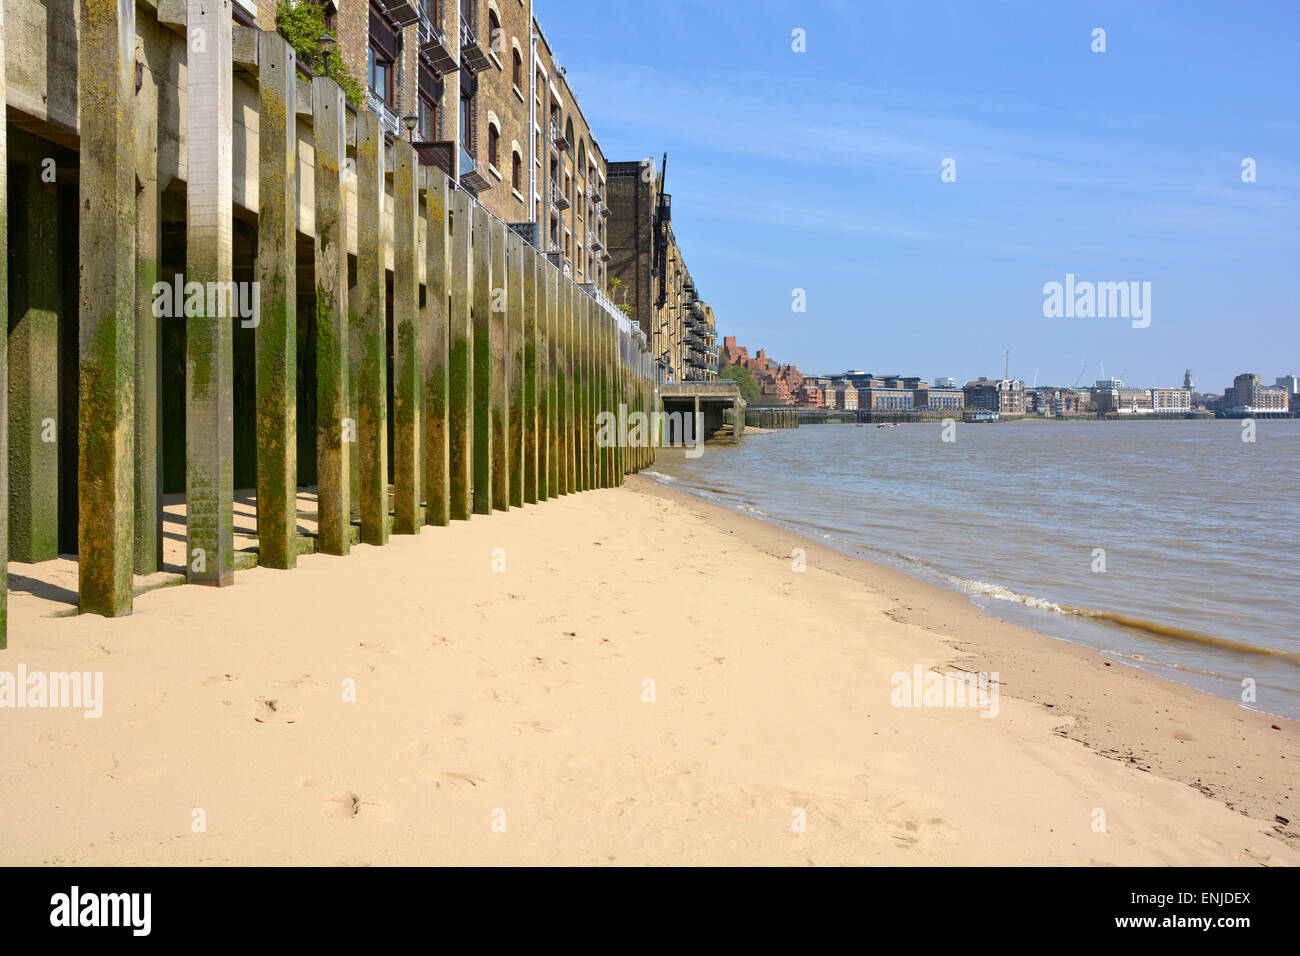 Sauberer fester Strandabschnitt am Ufer der Themse unter dem alten Lagergebäude am Flussufer auf Holzpfählen in den Wapping Tower Hamlets East London, Großbritannien Stockfoto